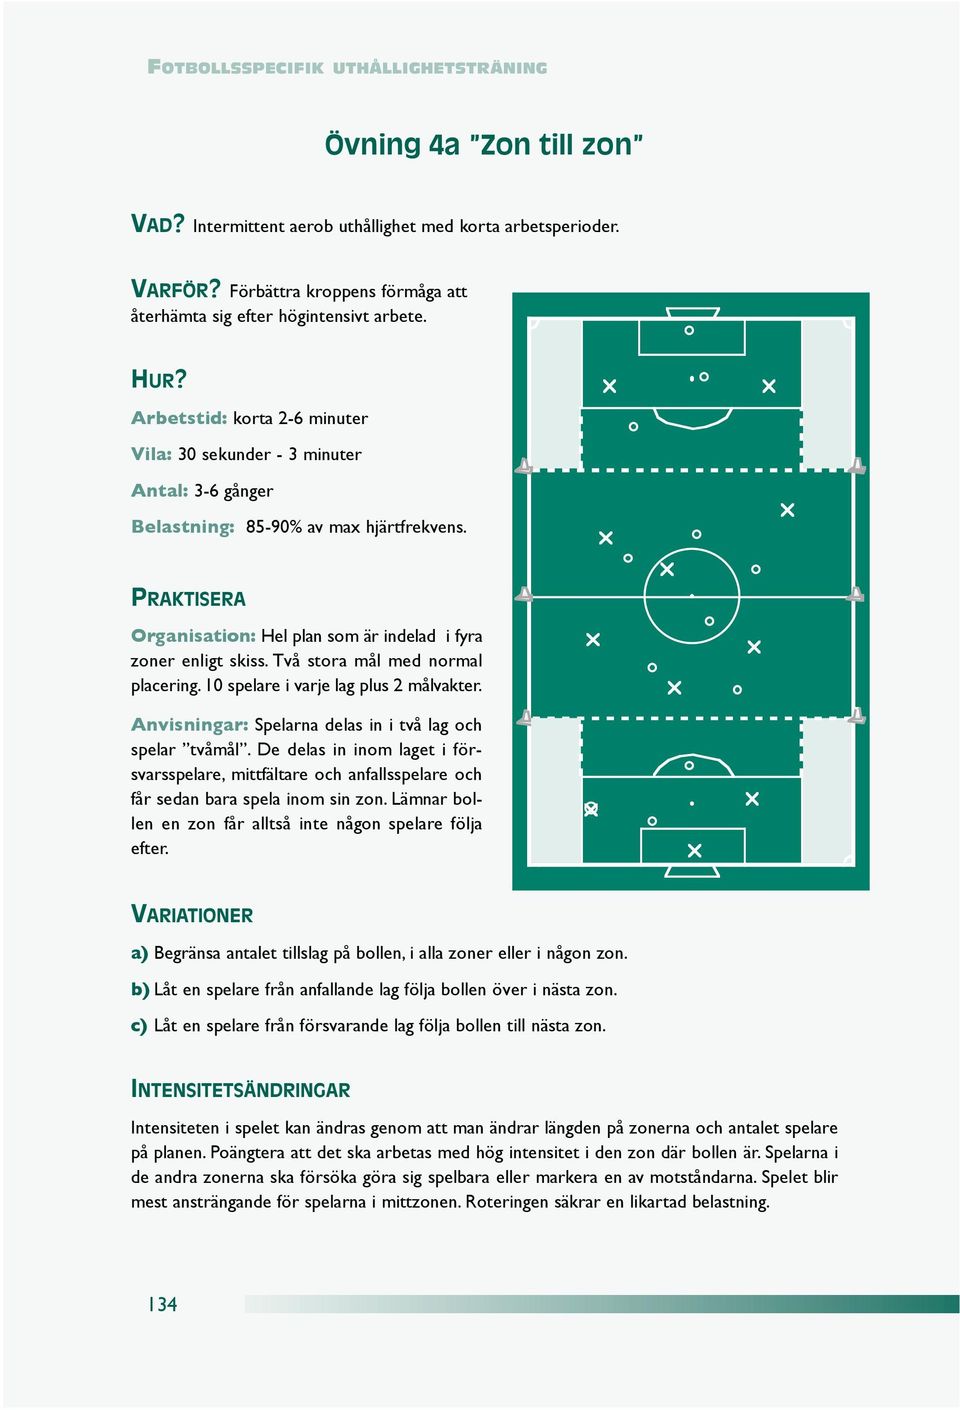 PRAKTISERA Organisation: Hel plan som är indelad i fyra zoner enligt skiss. Två stora mål med normal placering. 10 spelare i varje lag plus 2 målvakter.